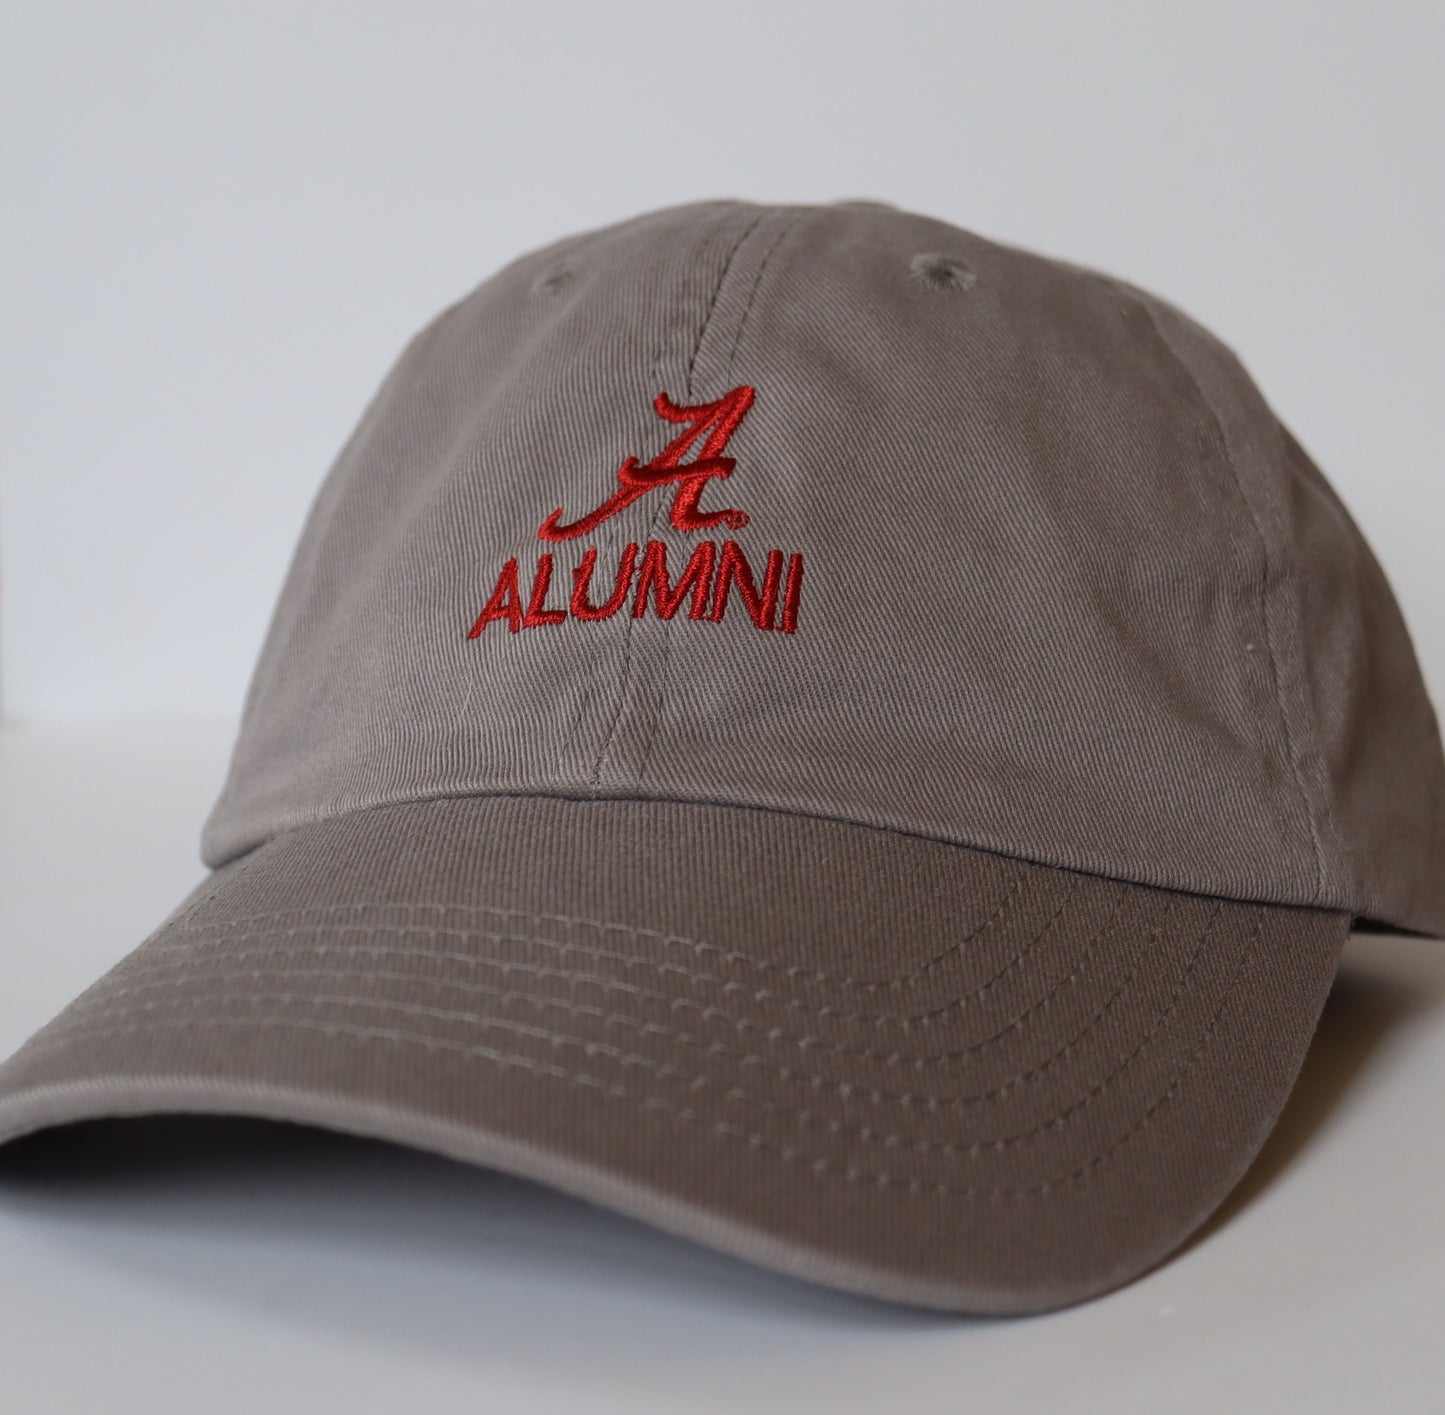 The Shirt Shop "A/Alumni" Hat (5 Colors)